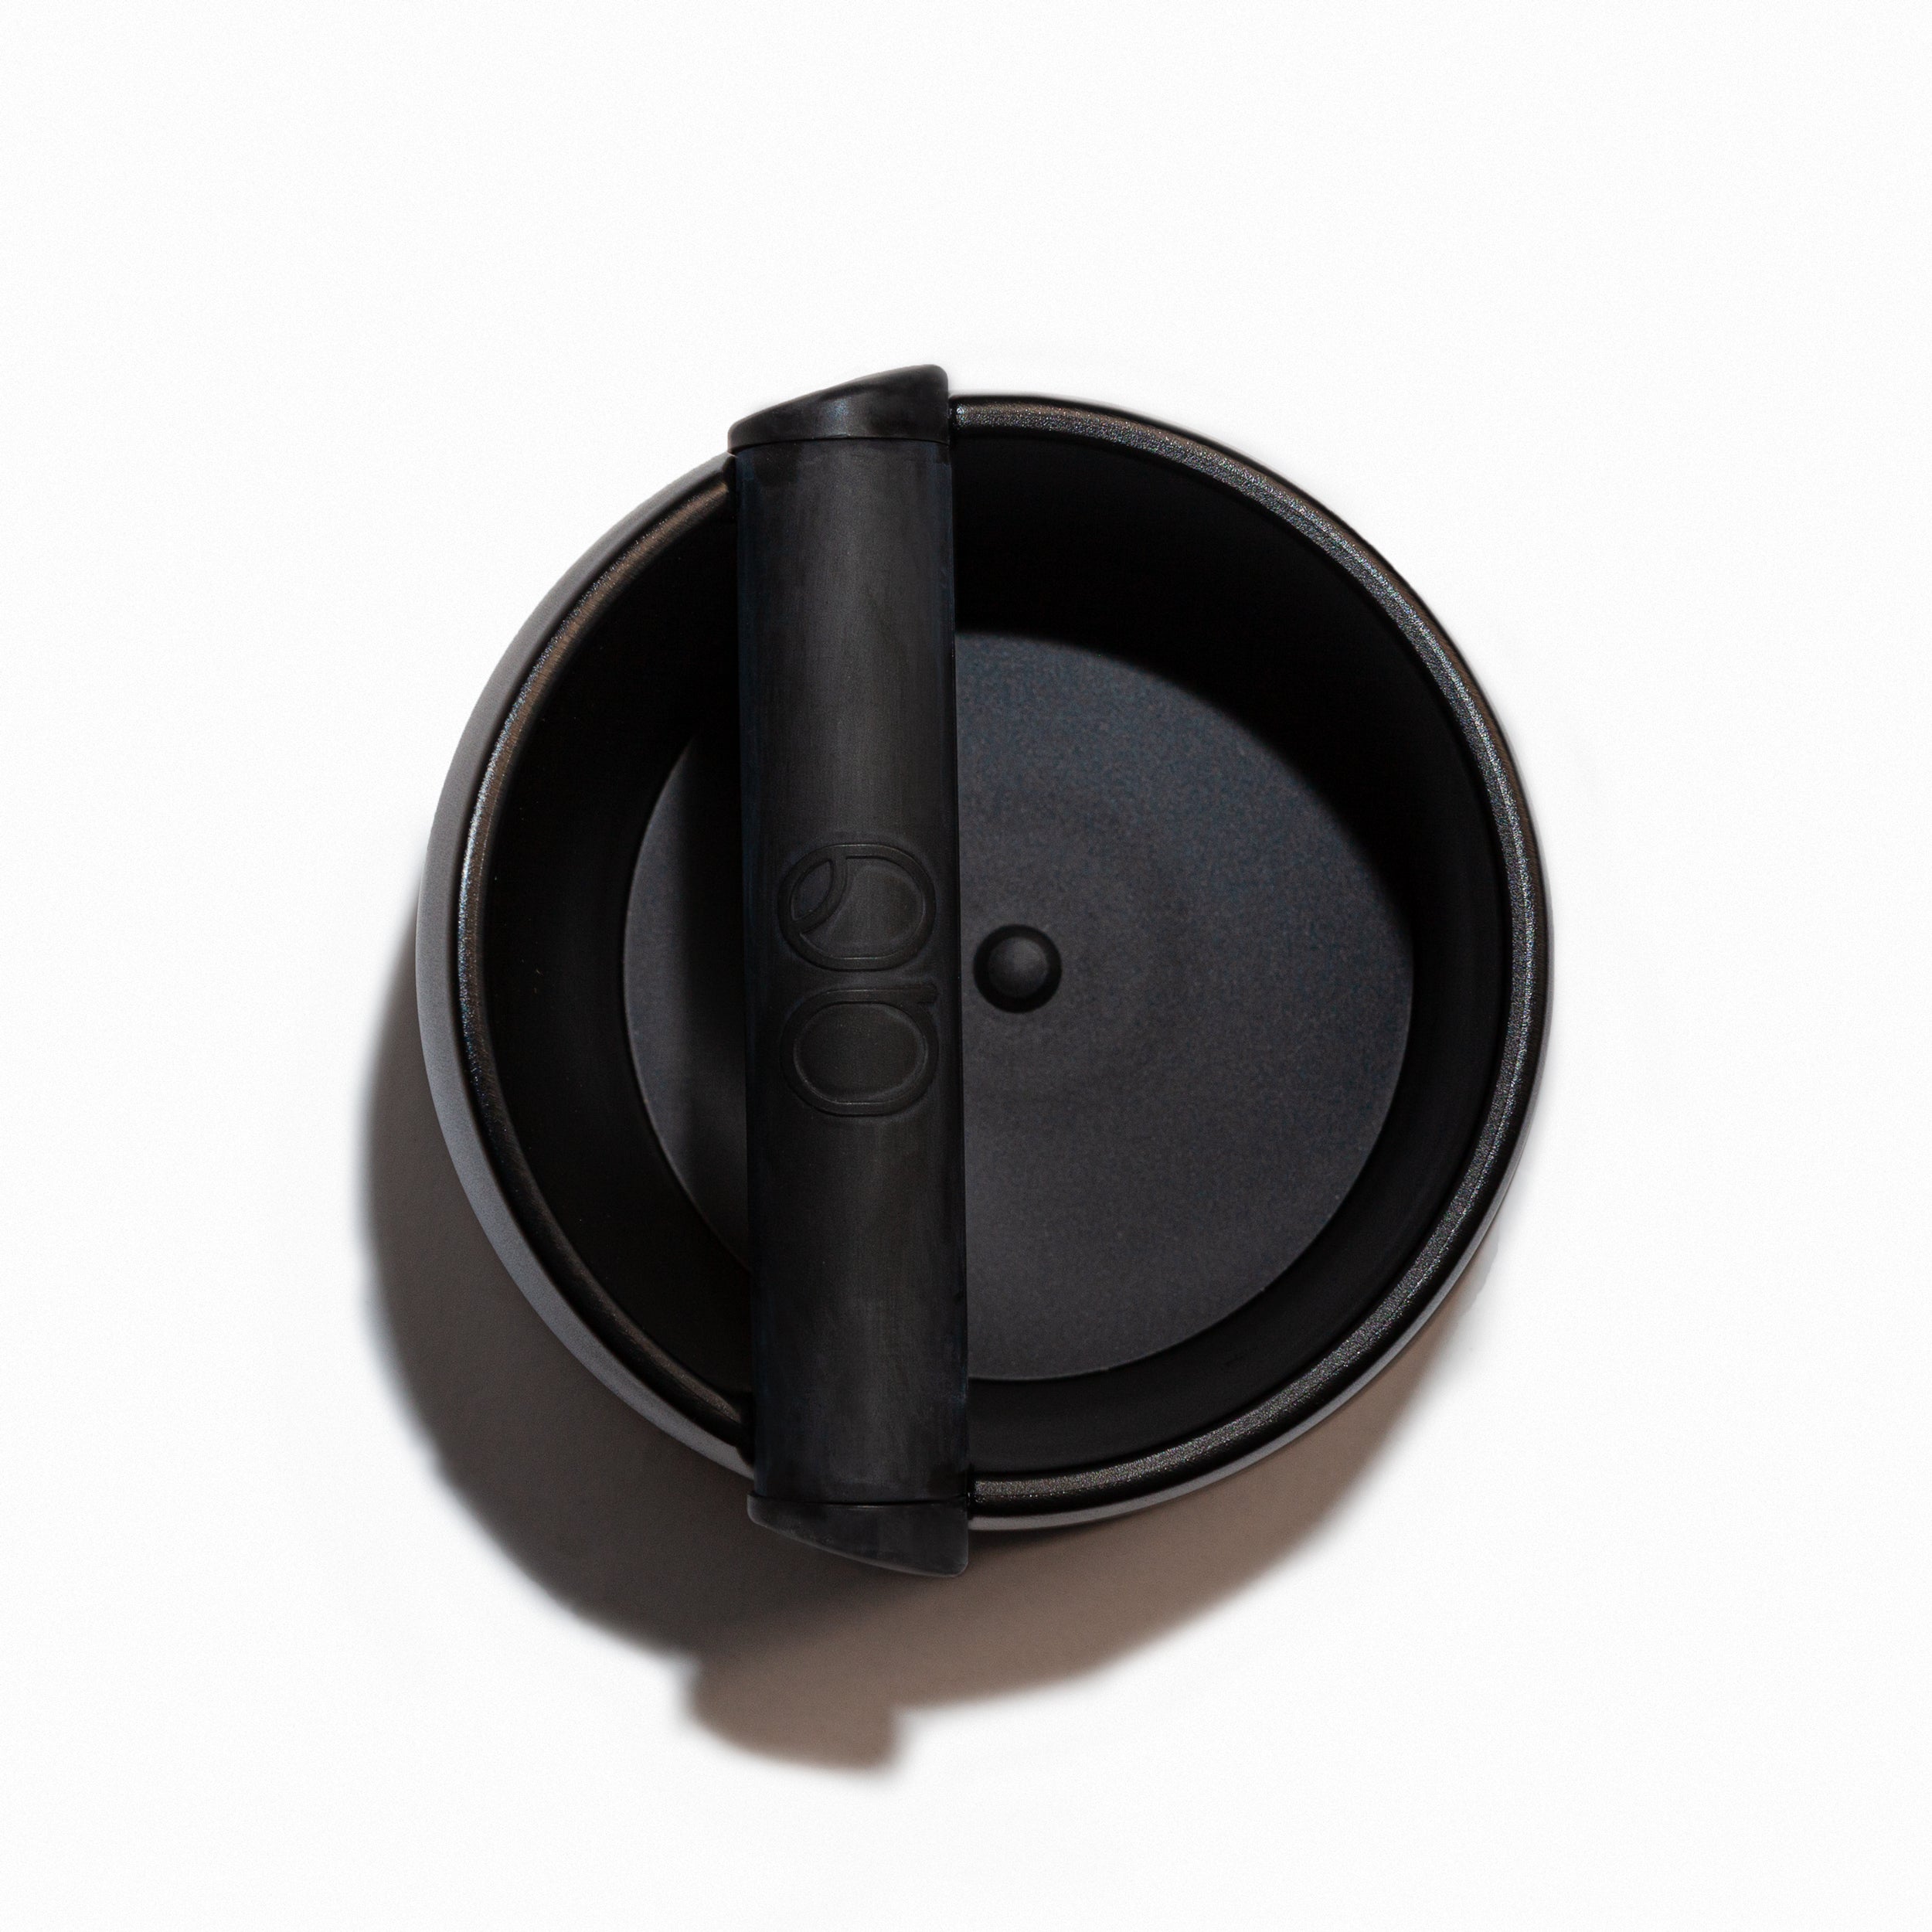 Draufsicht des Espresso Abschlagkasten in schwarz.